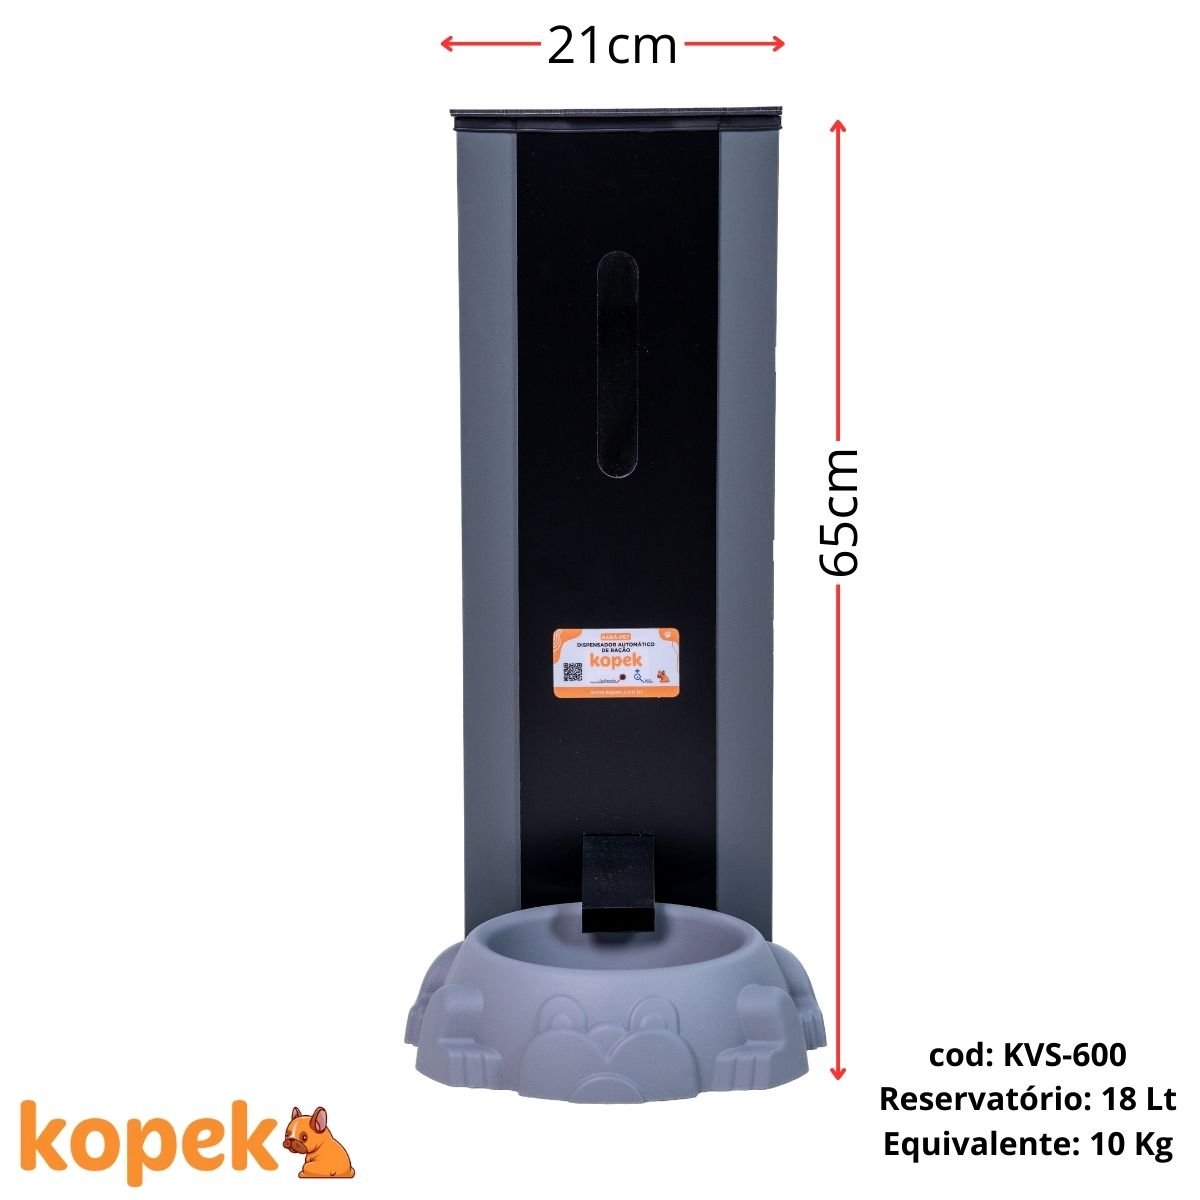 Alimentador Automático para Cães 18 Litros Kvs-600 Kopek:110v/preto - 3